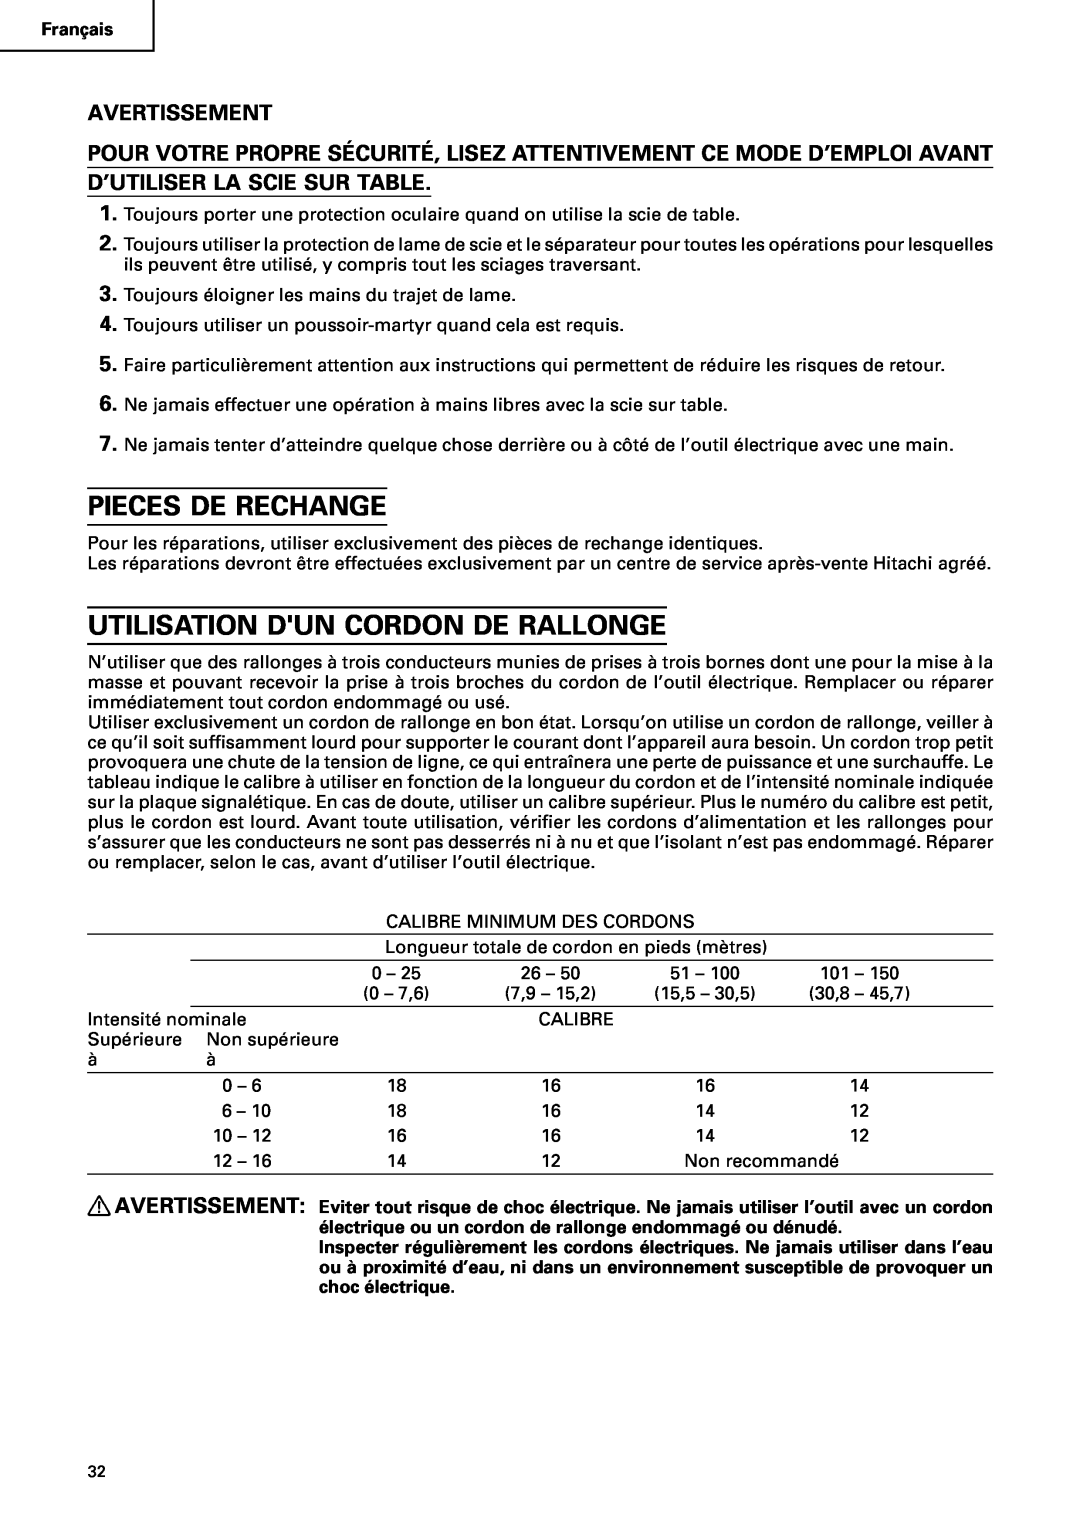 Hitachi C10RA2 instruction manual Pieces De Rechange, Utilisation Dun Cordon De Rallonge, Avertissement 